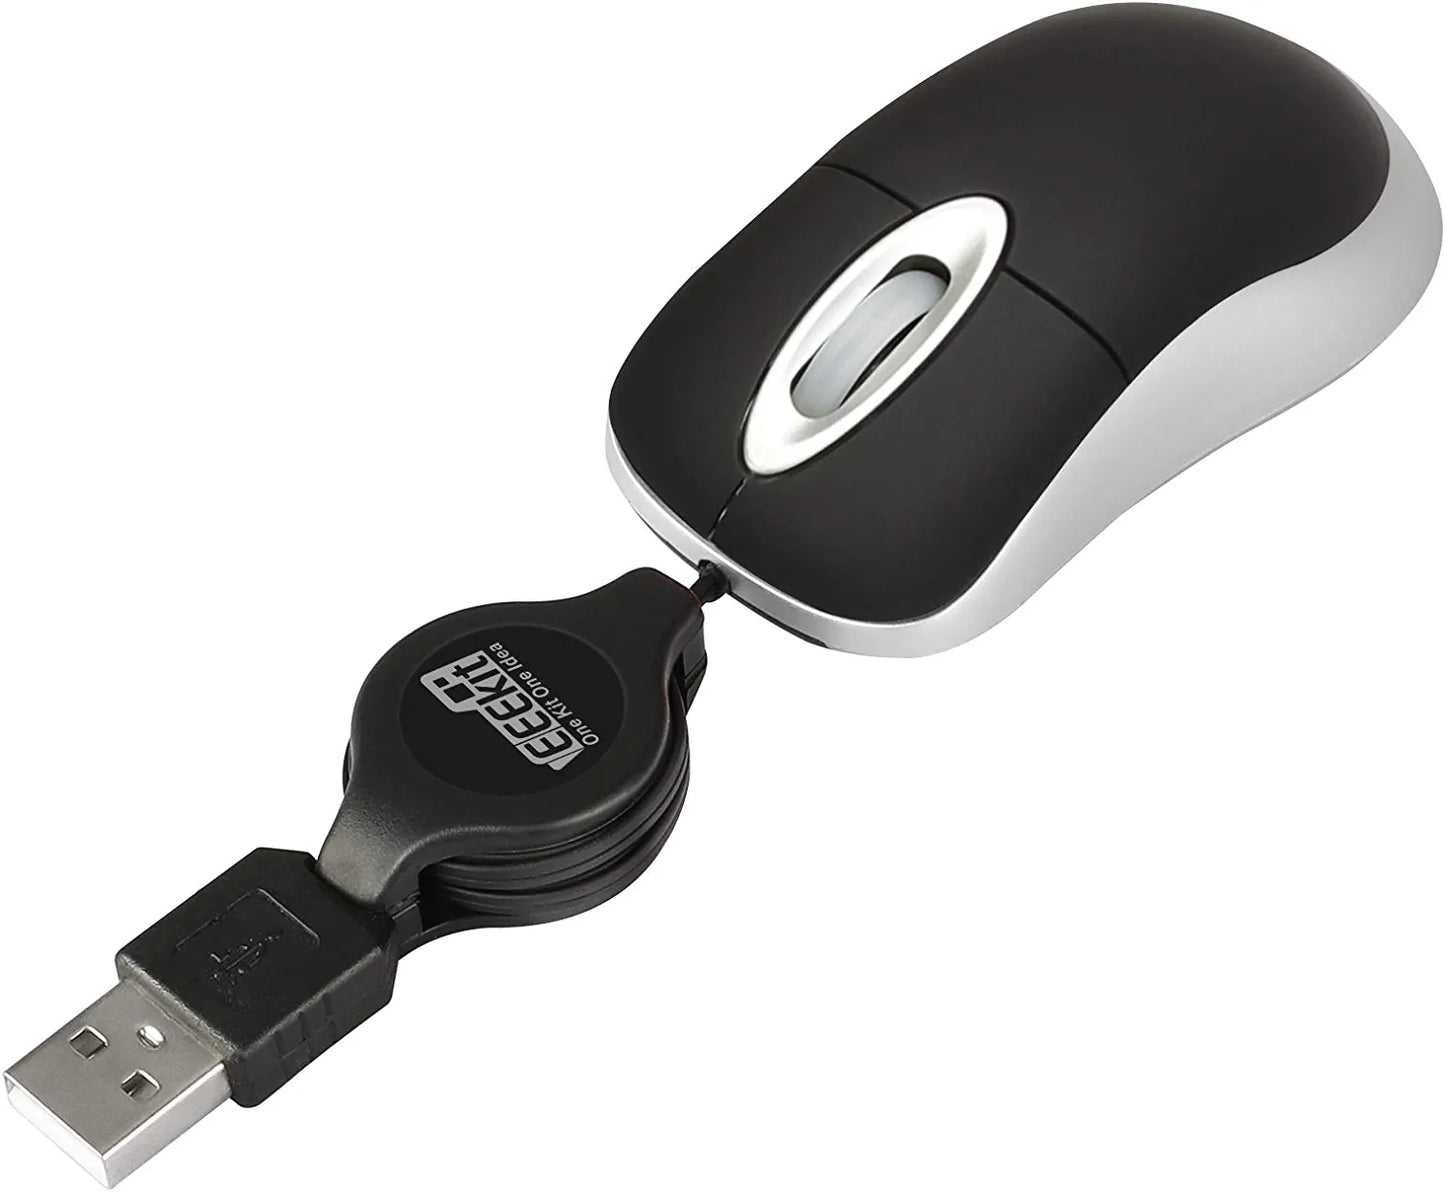 EEEkit Mini USB Mouse Black 2pcs